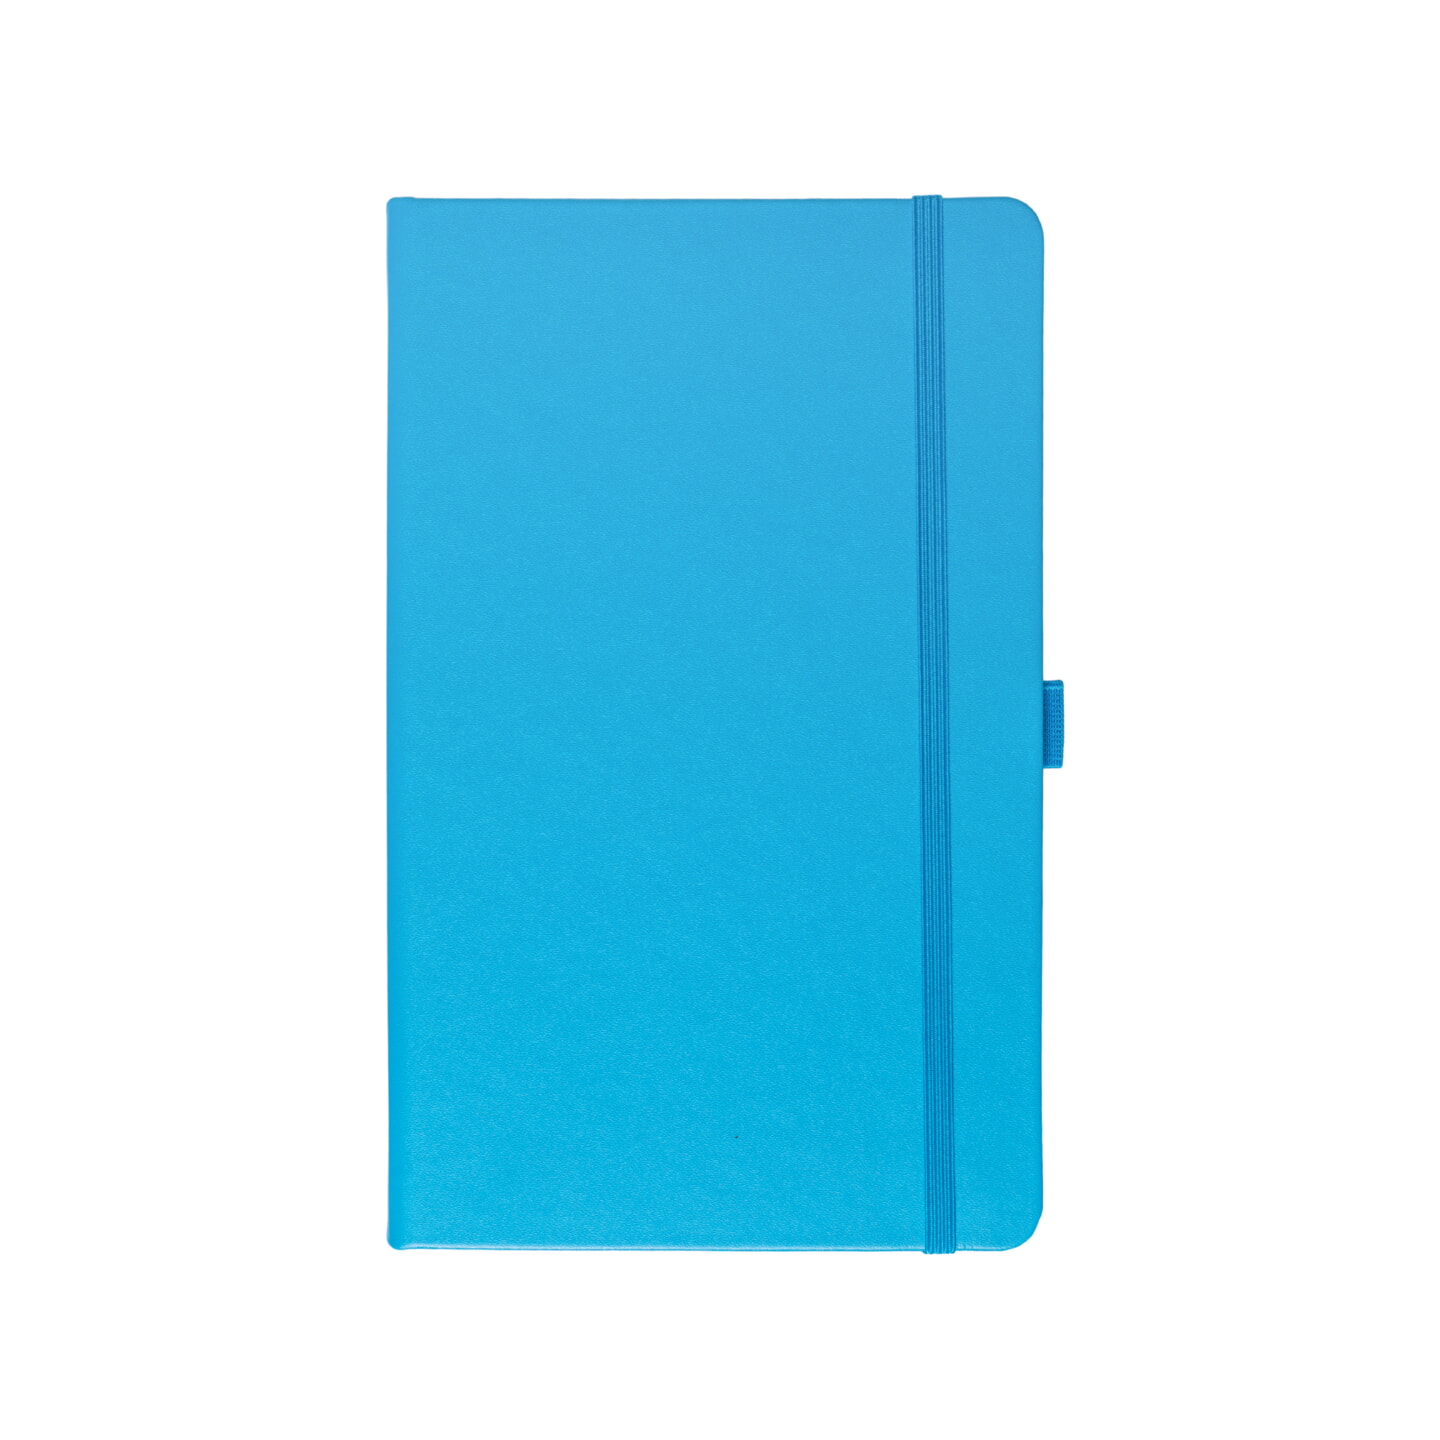 Блокнот для зарисовок Sketchmarker 140г/кв.м 13*21см 80л твердая обложка Синий Карибский